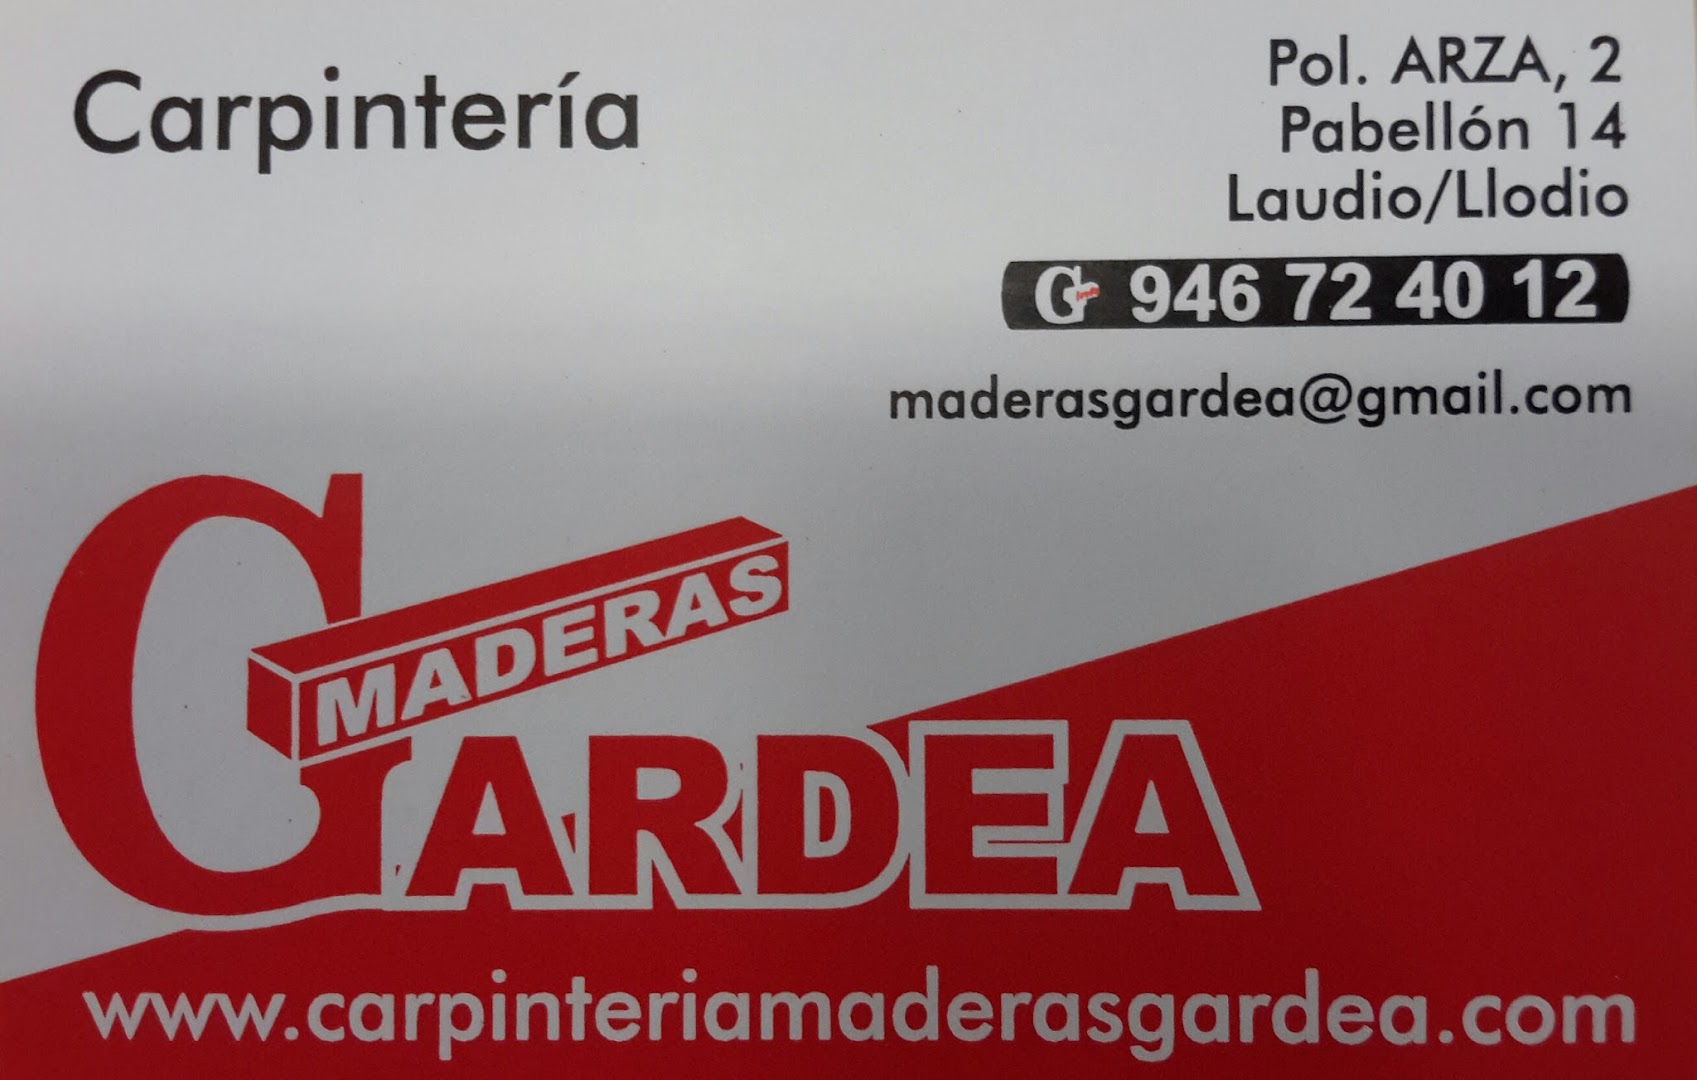 Carpinteria Maderas Gardea S.C